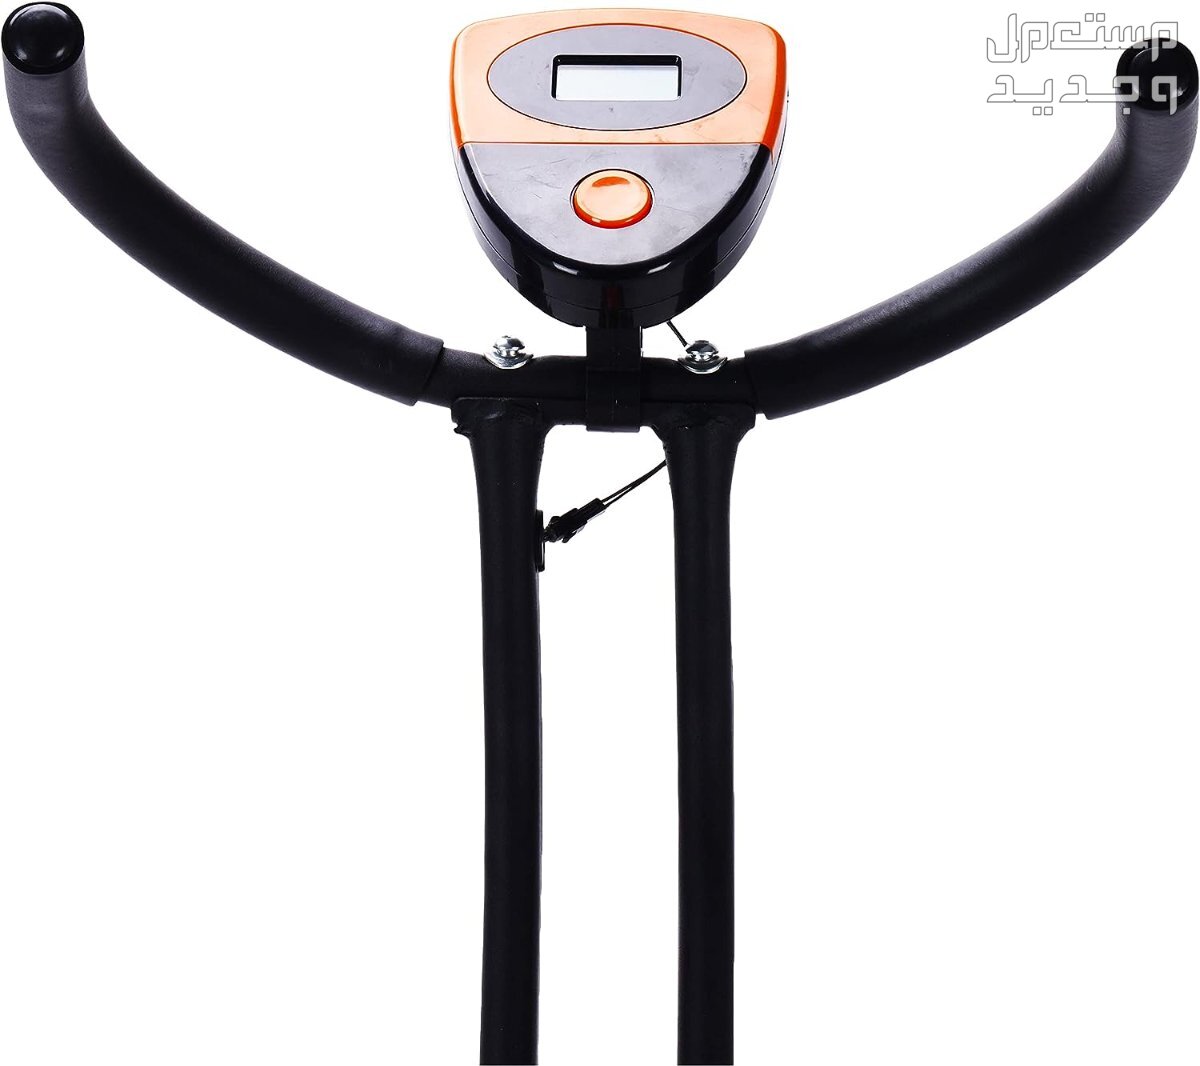 ارخص اجهزة رياضية مستعملة بالمواصفات والصور والاسعار في الأردن جهاز ‎دراجة كارديو ‎بودي بيلدر موديل ‎38-1112-Orange